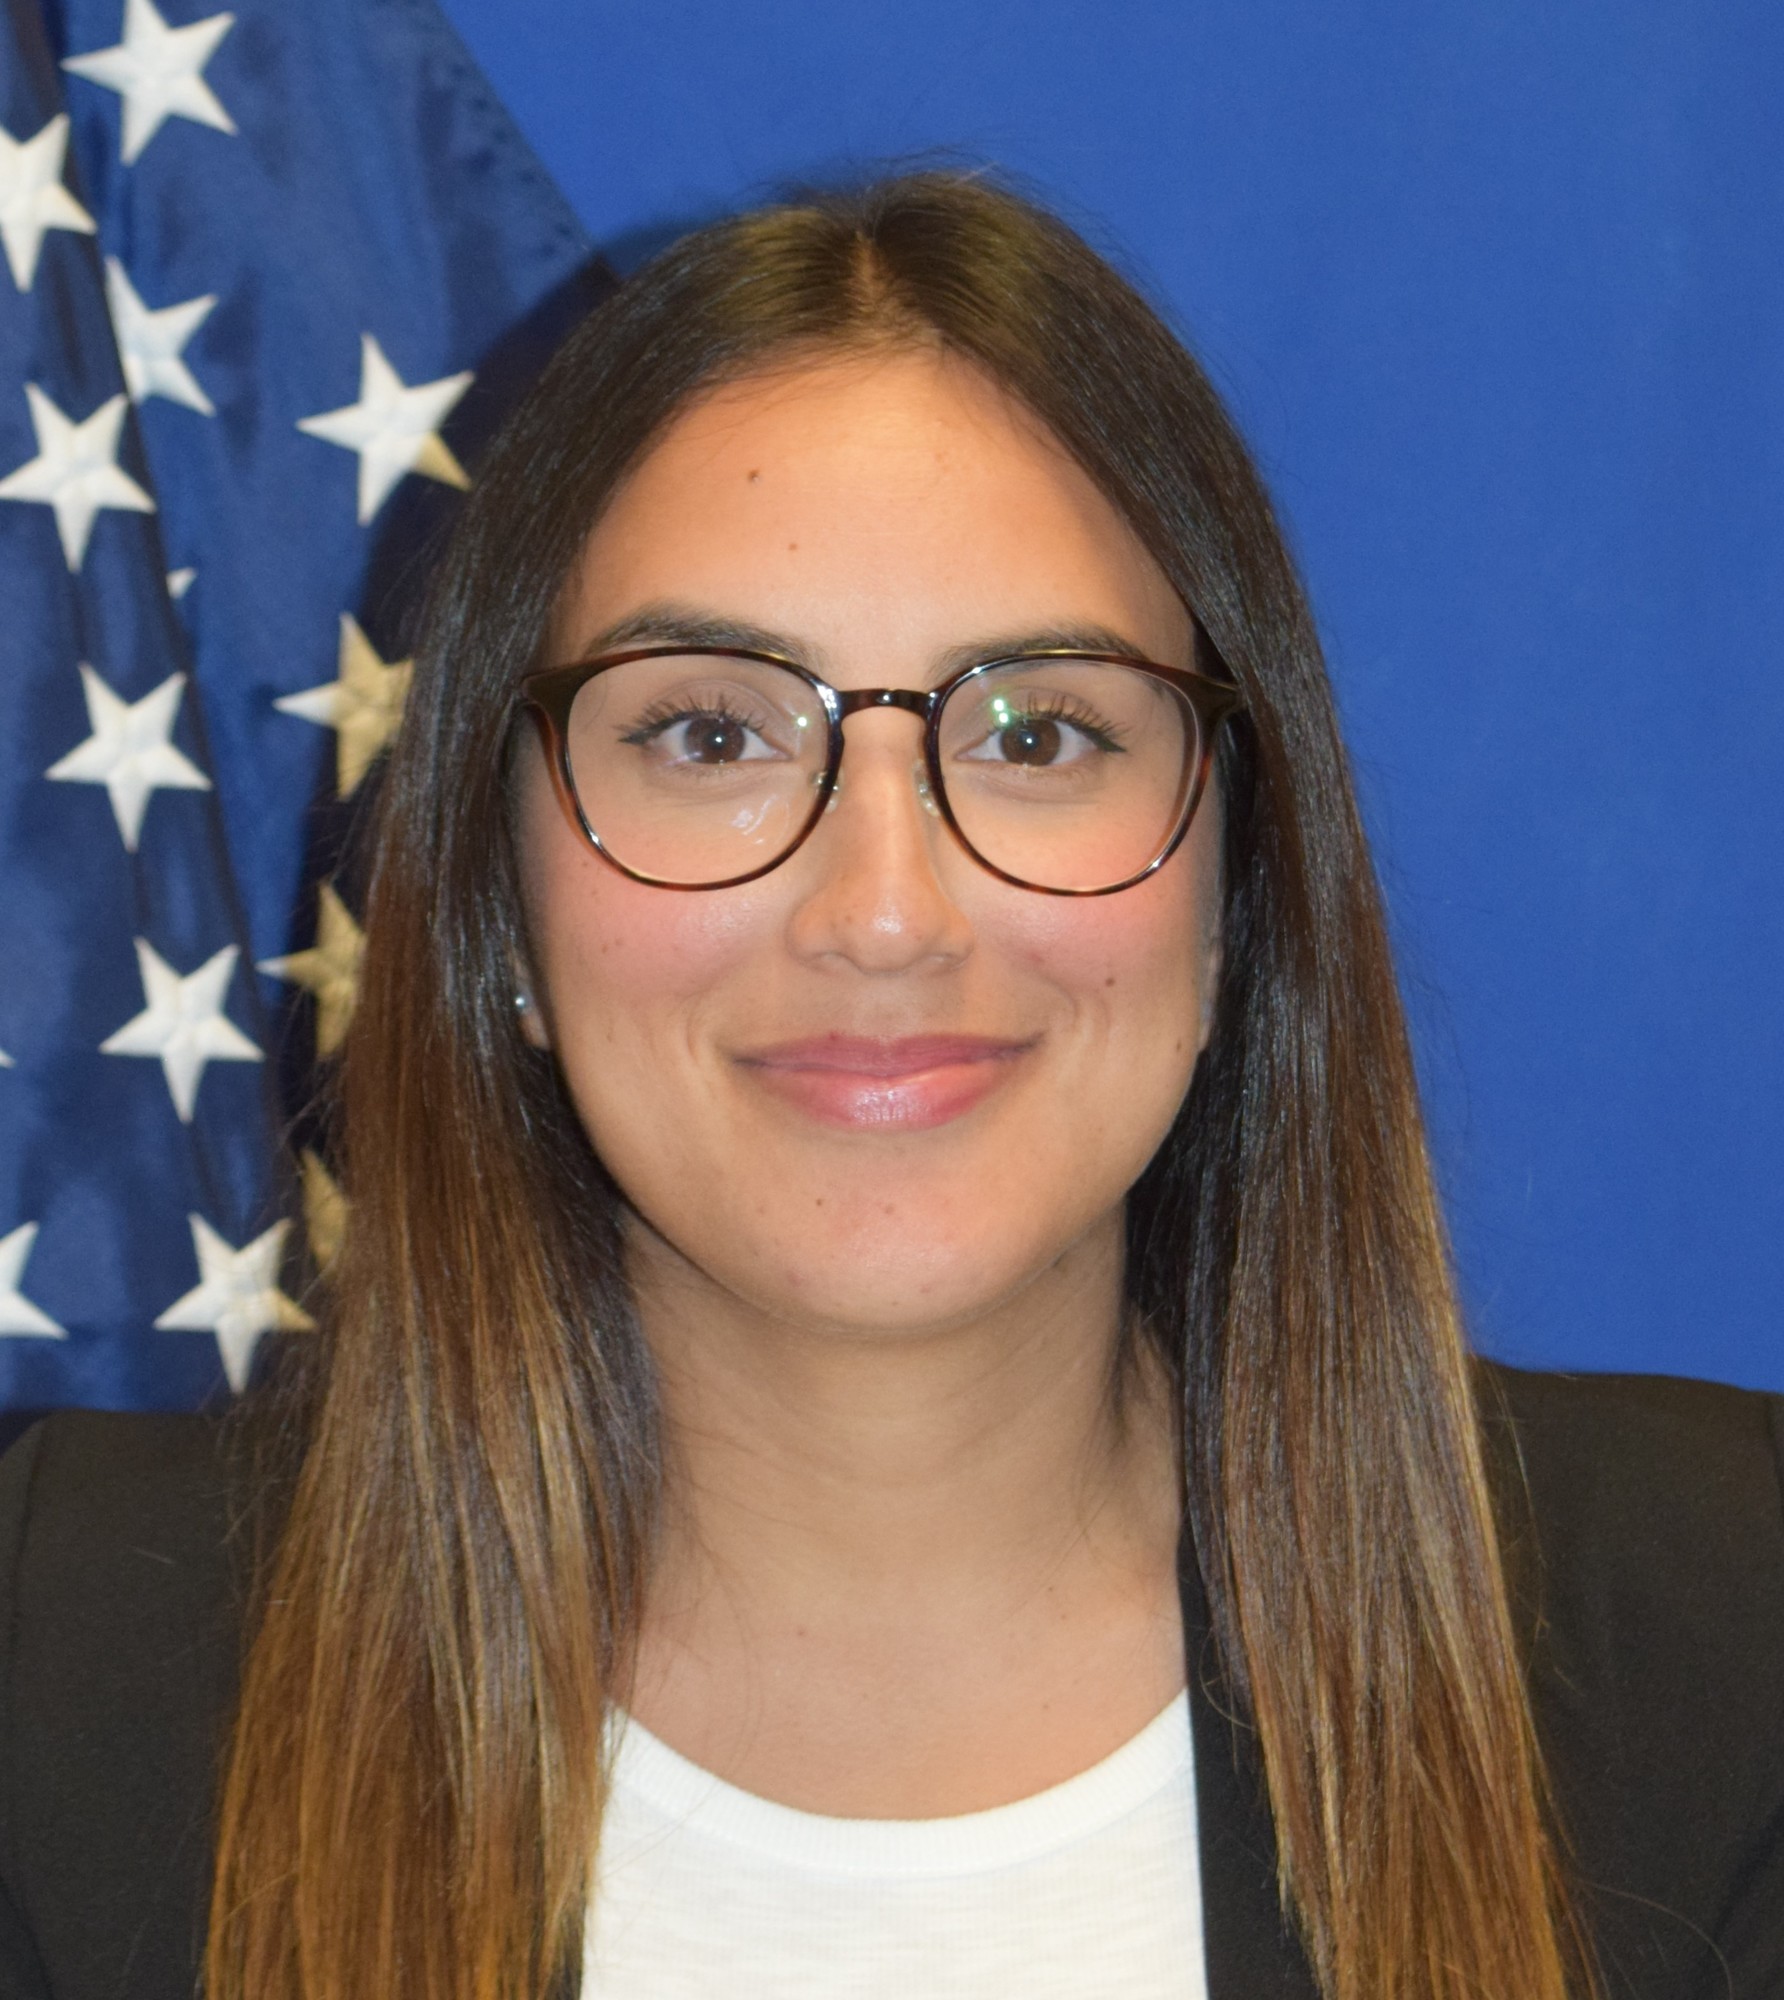 Public Affairs Specialist Yocelyne Mendoza